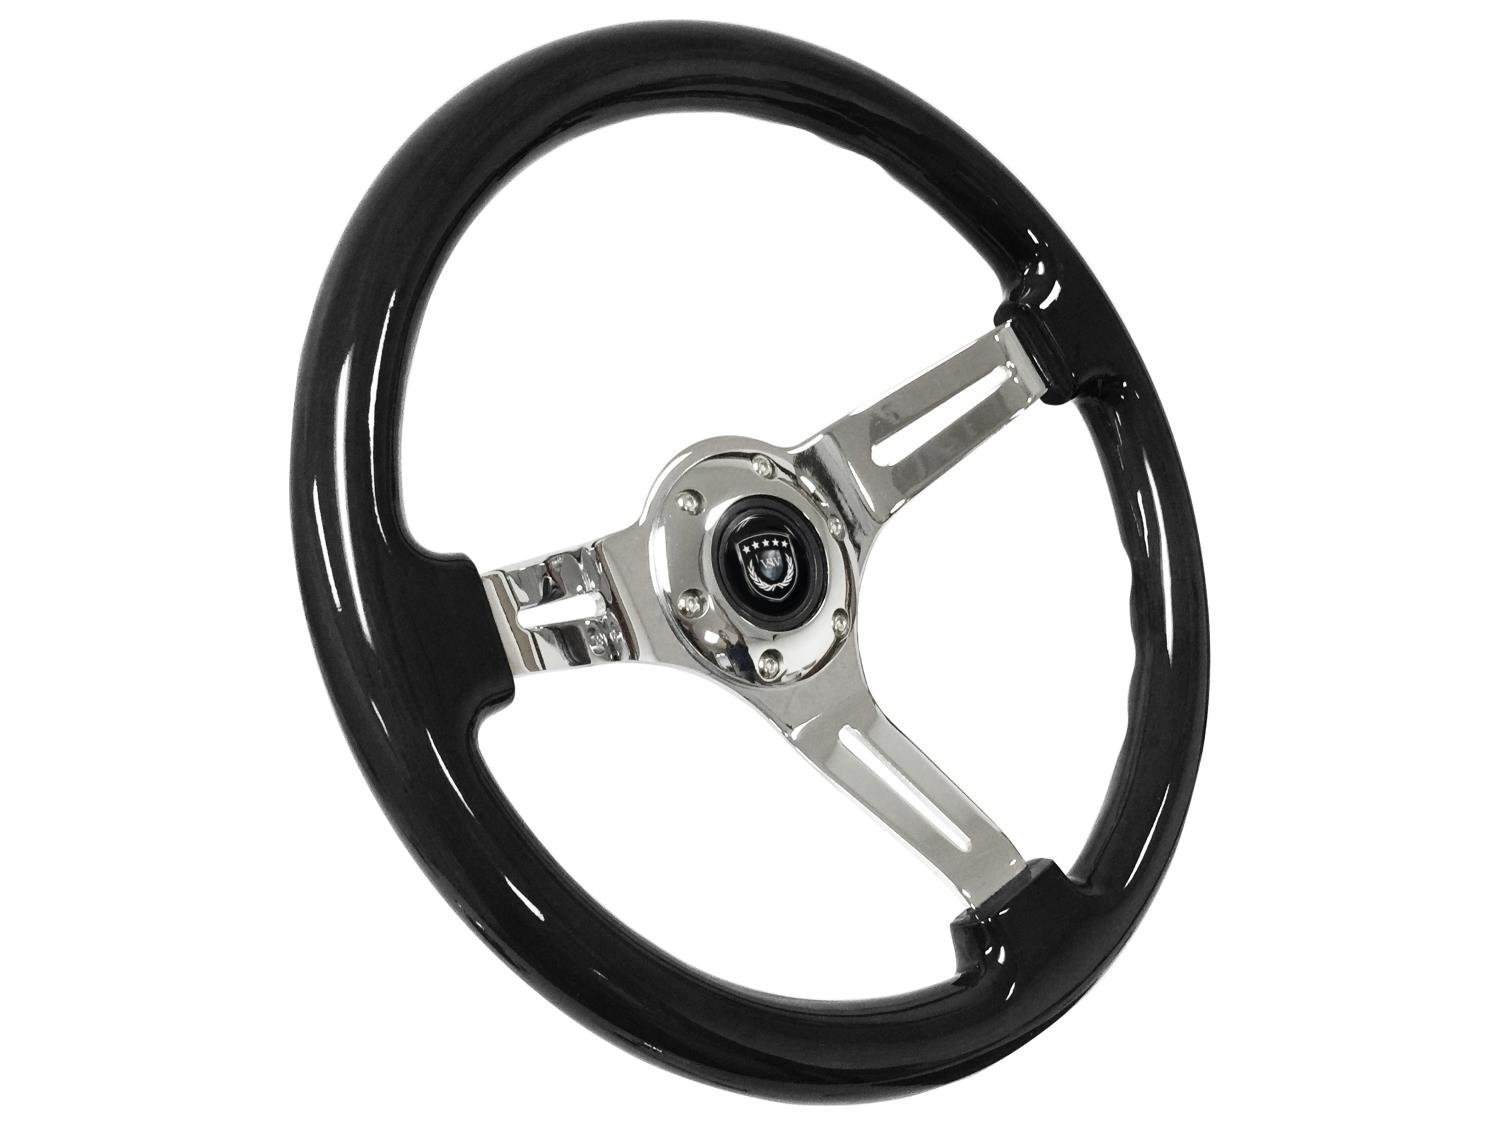 S6 Sport Steering Wheel, 14 in. Diameter, Black Ash Stained Wood Grip